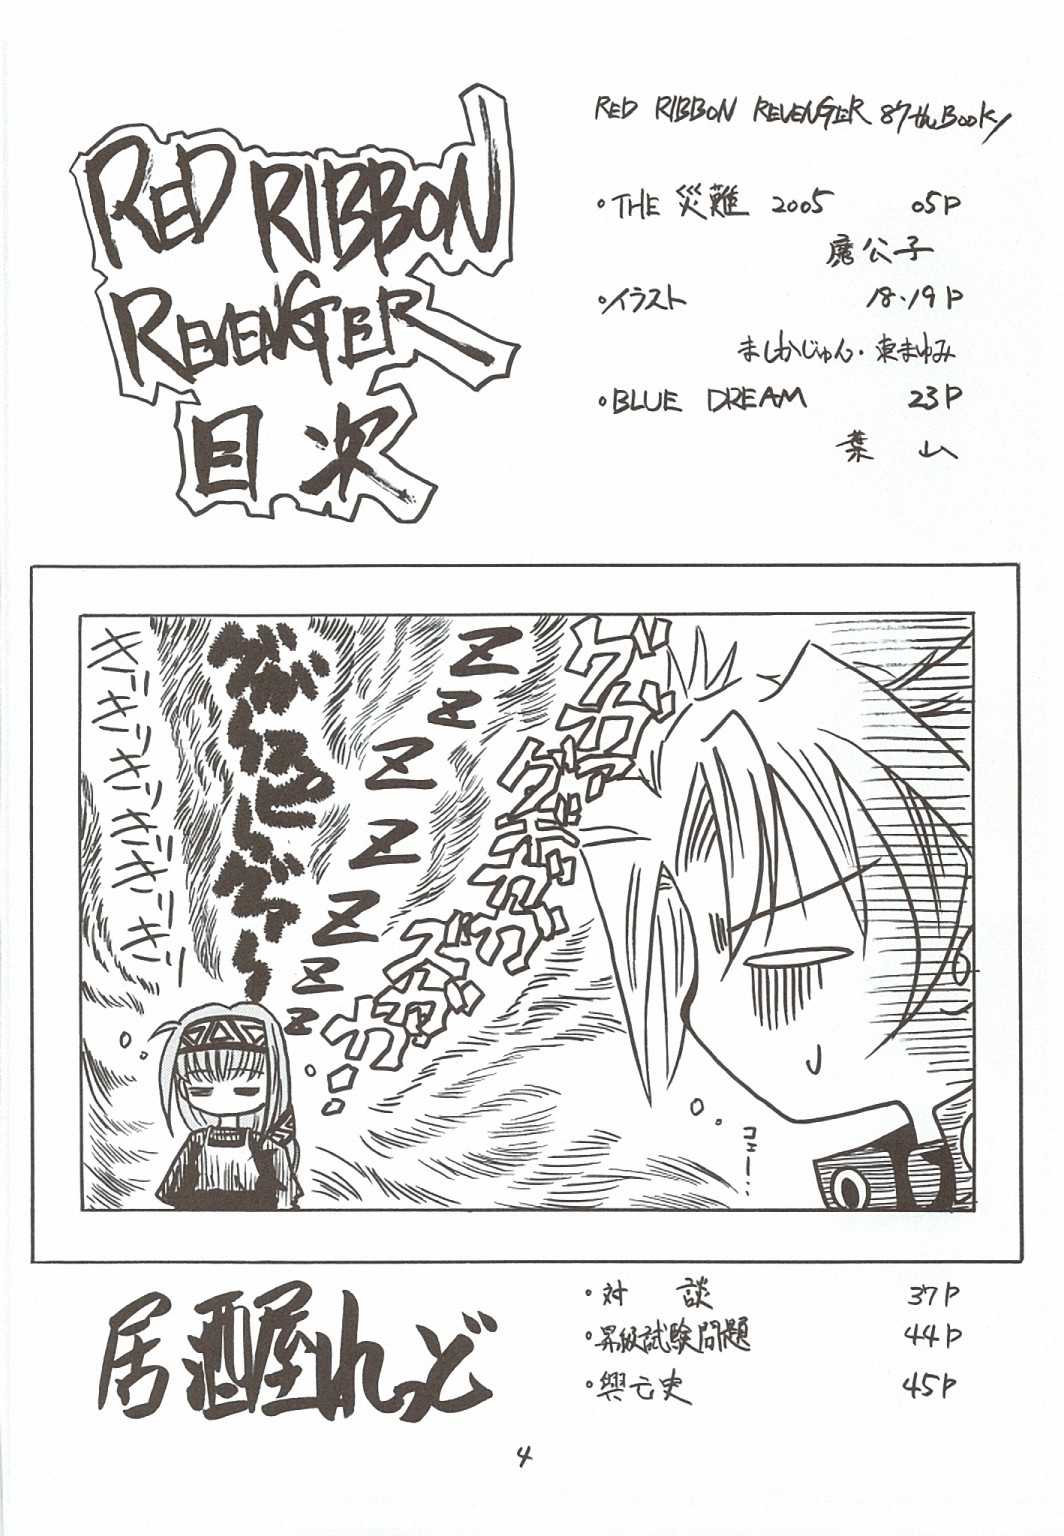 [RED RIBBON REVENGER] Kaze no Yousei 3 (Elemental Gerad) [RED RIBBON REVENGER] 風の妖精3 (EREMENTAR GERAD)